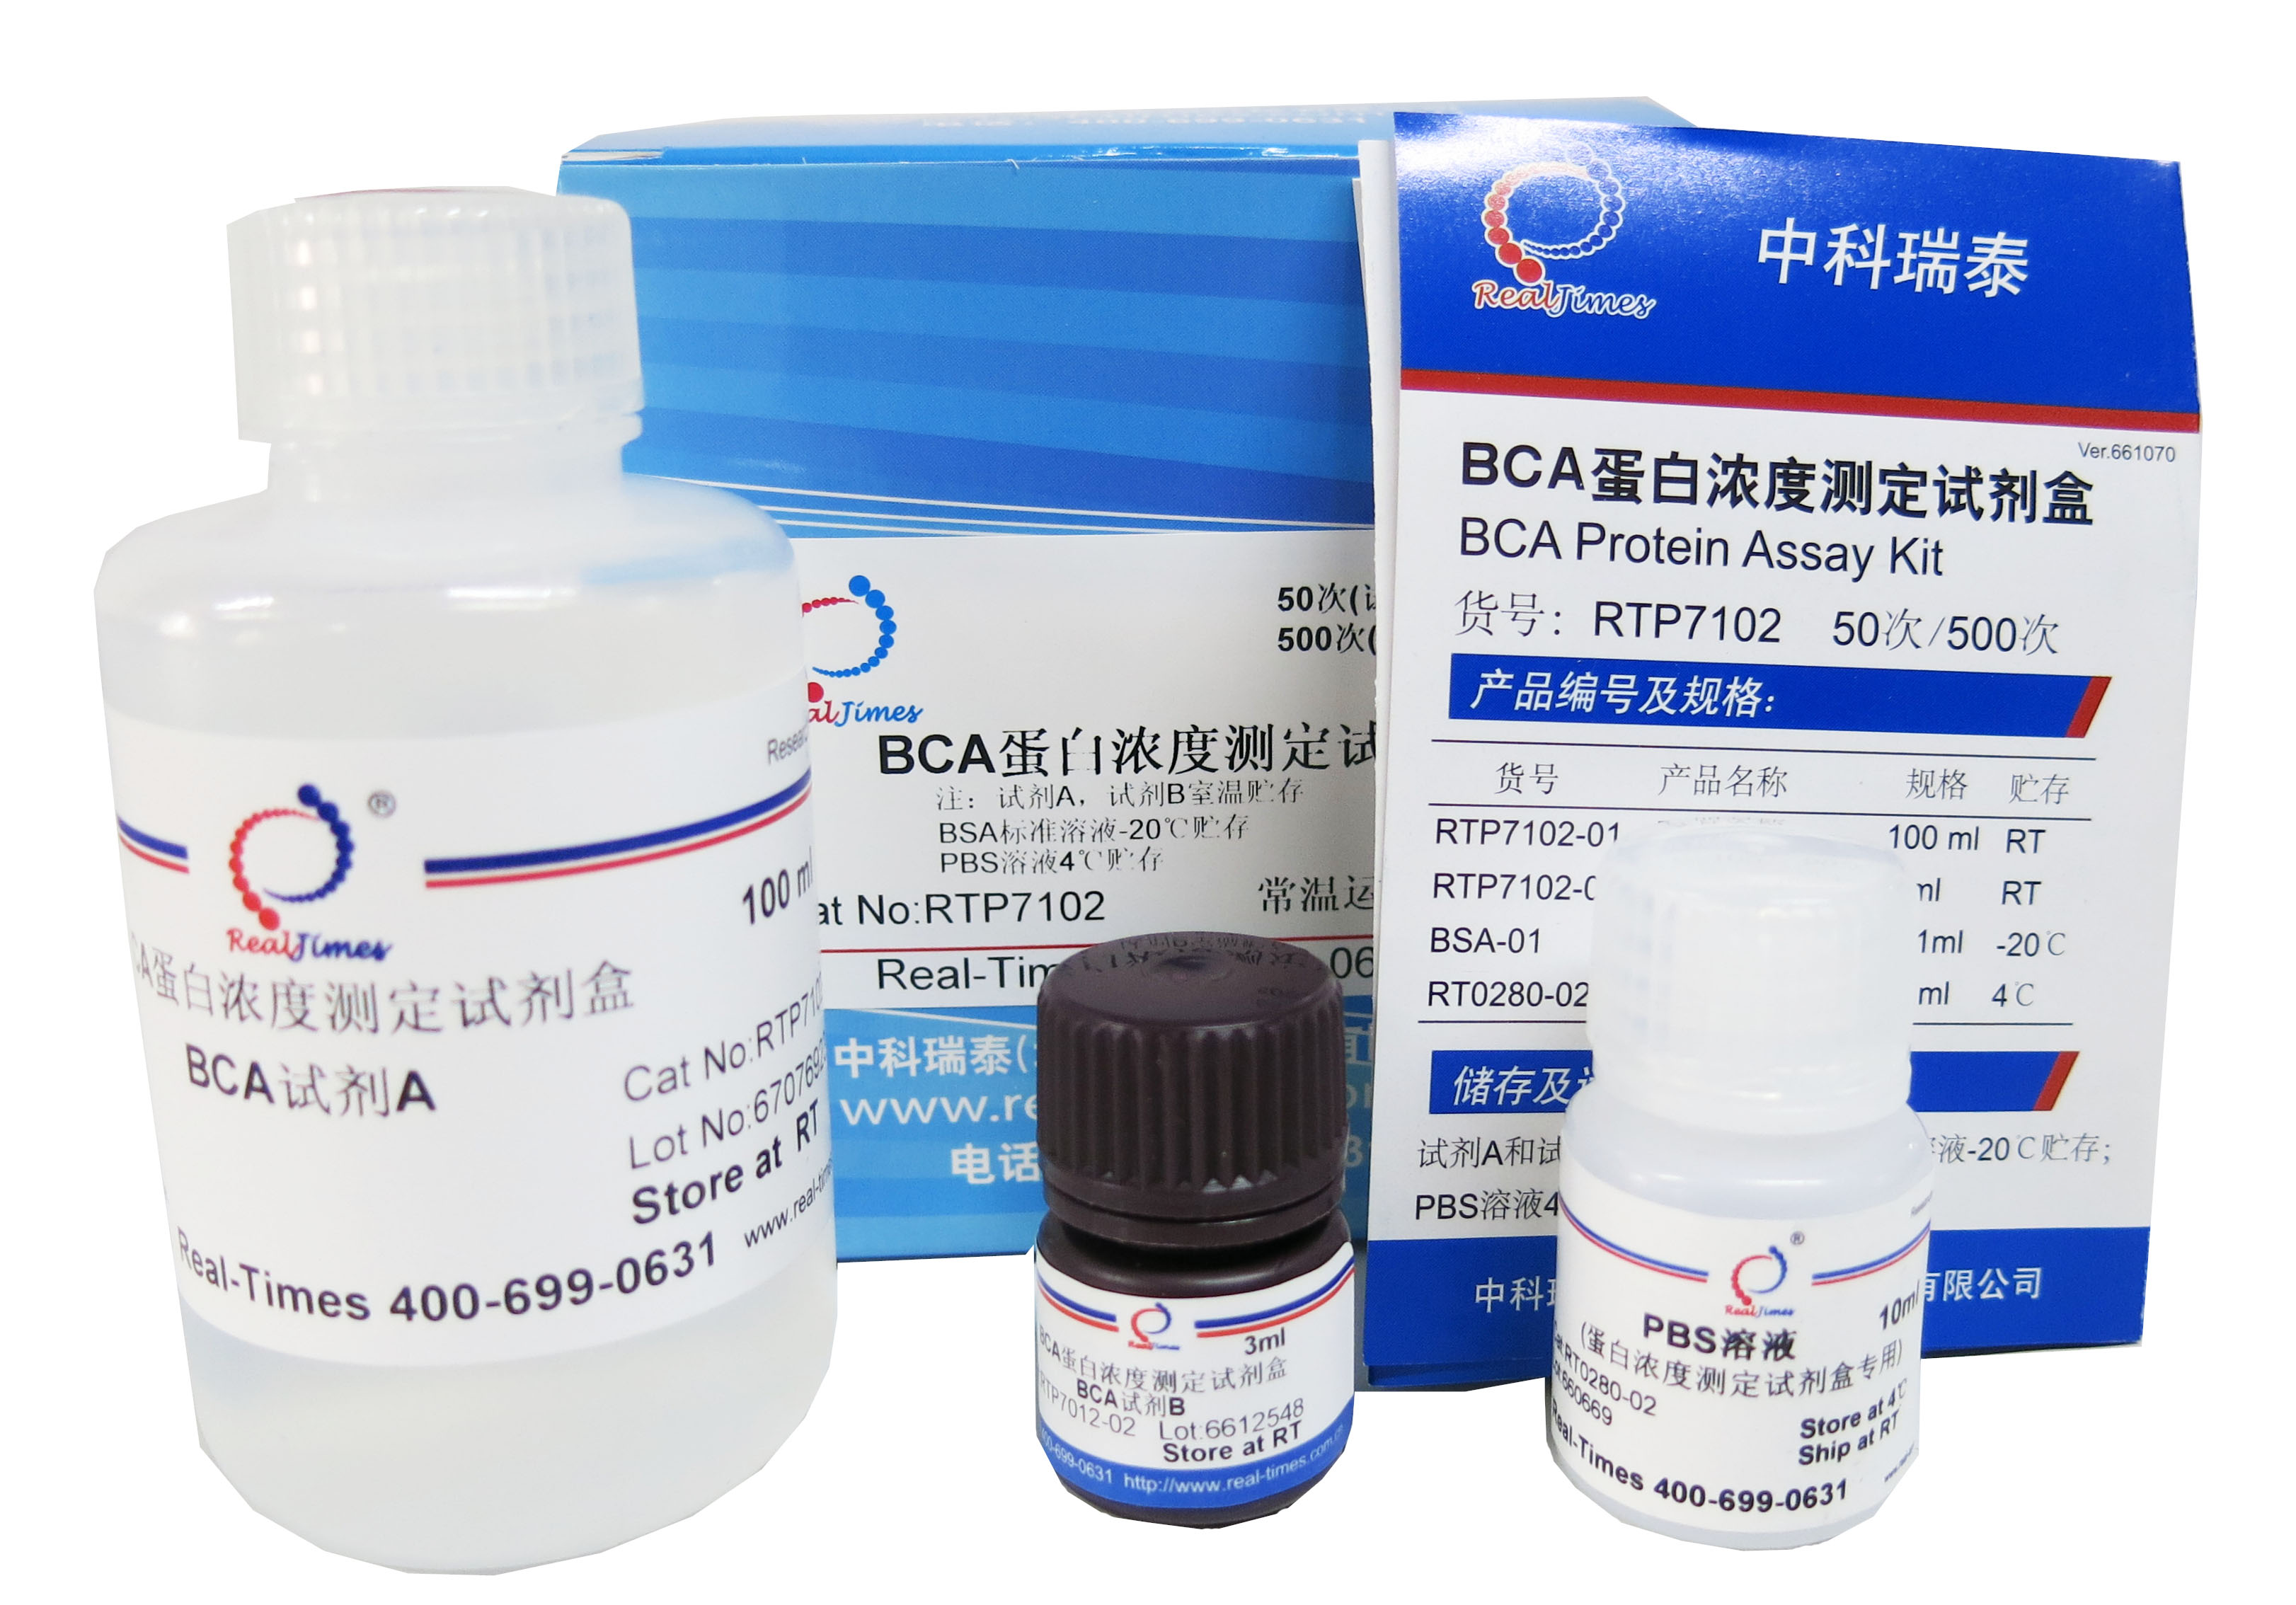 BCA蛋白浓度测定试剂盒